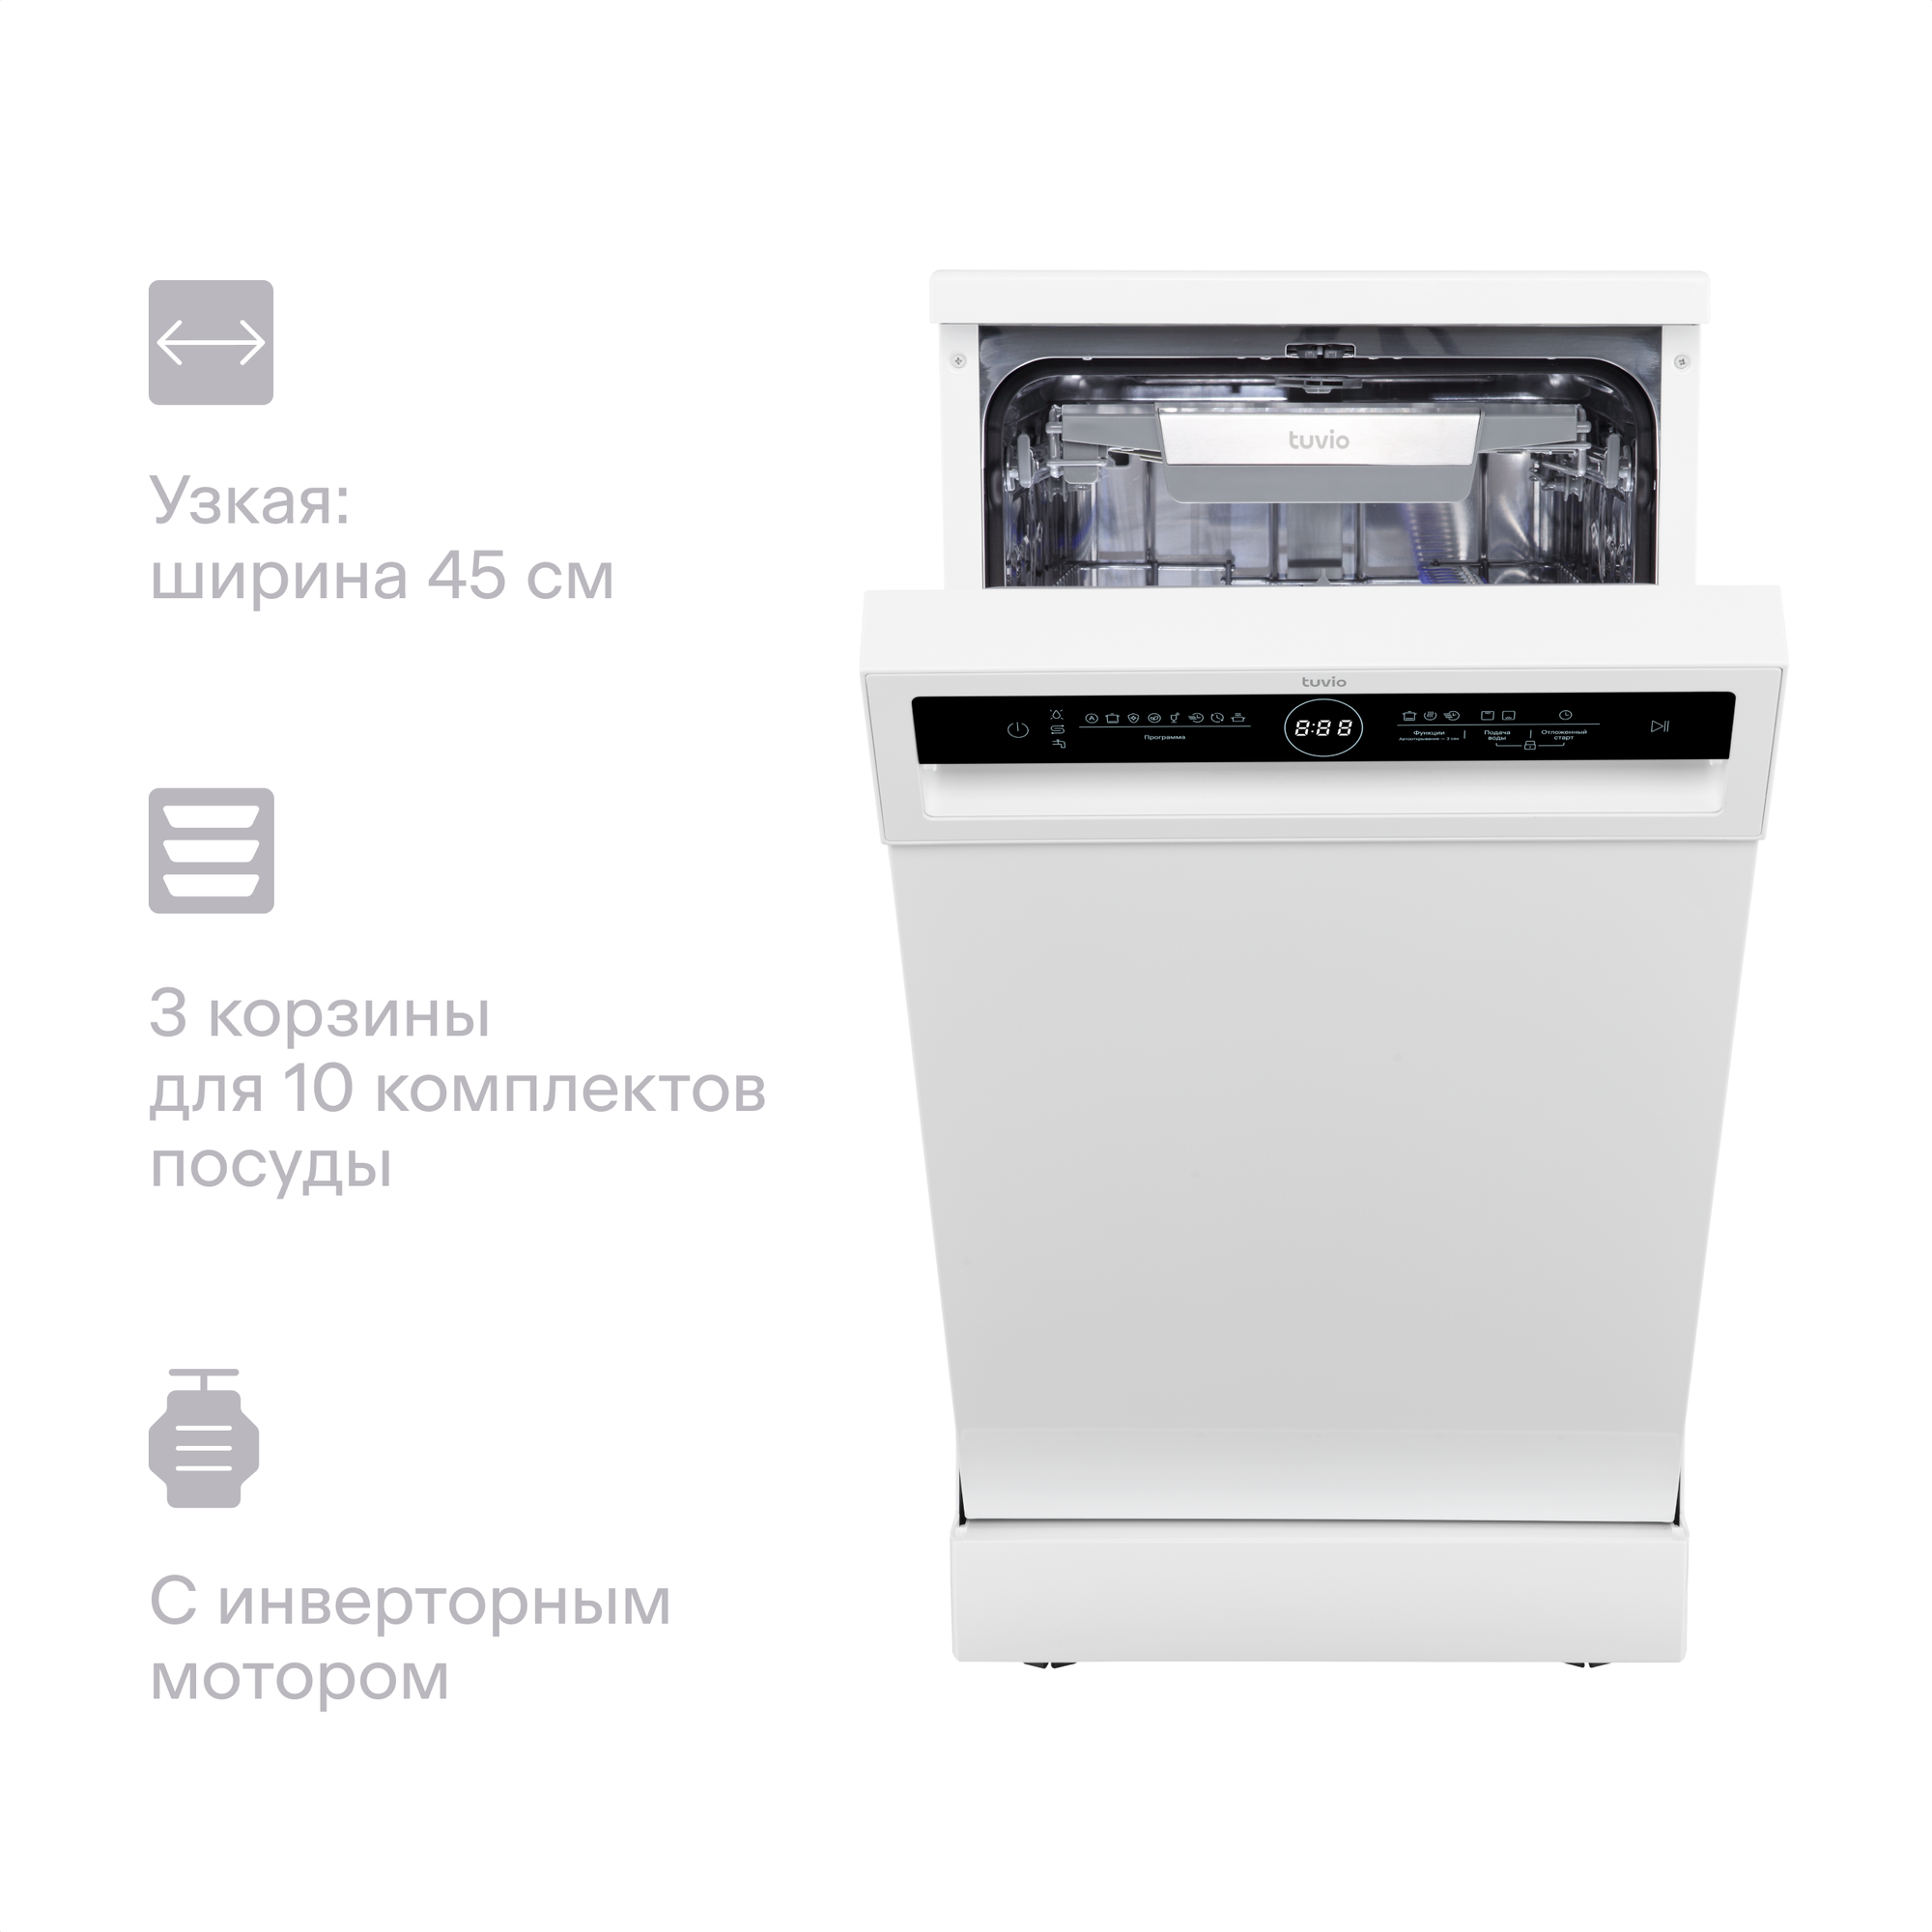 Посудомоечная машина с инвертором и автооткрыванием Tuvio DF43PT8WI1, белый